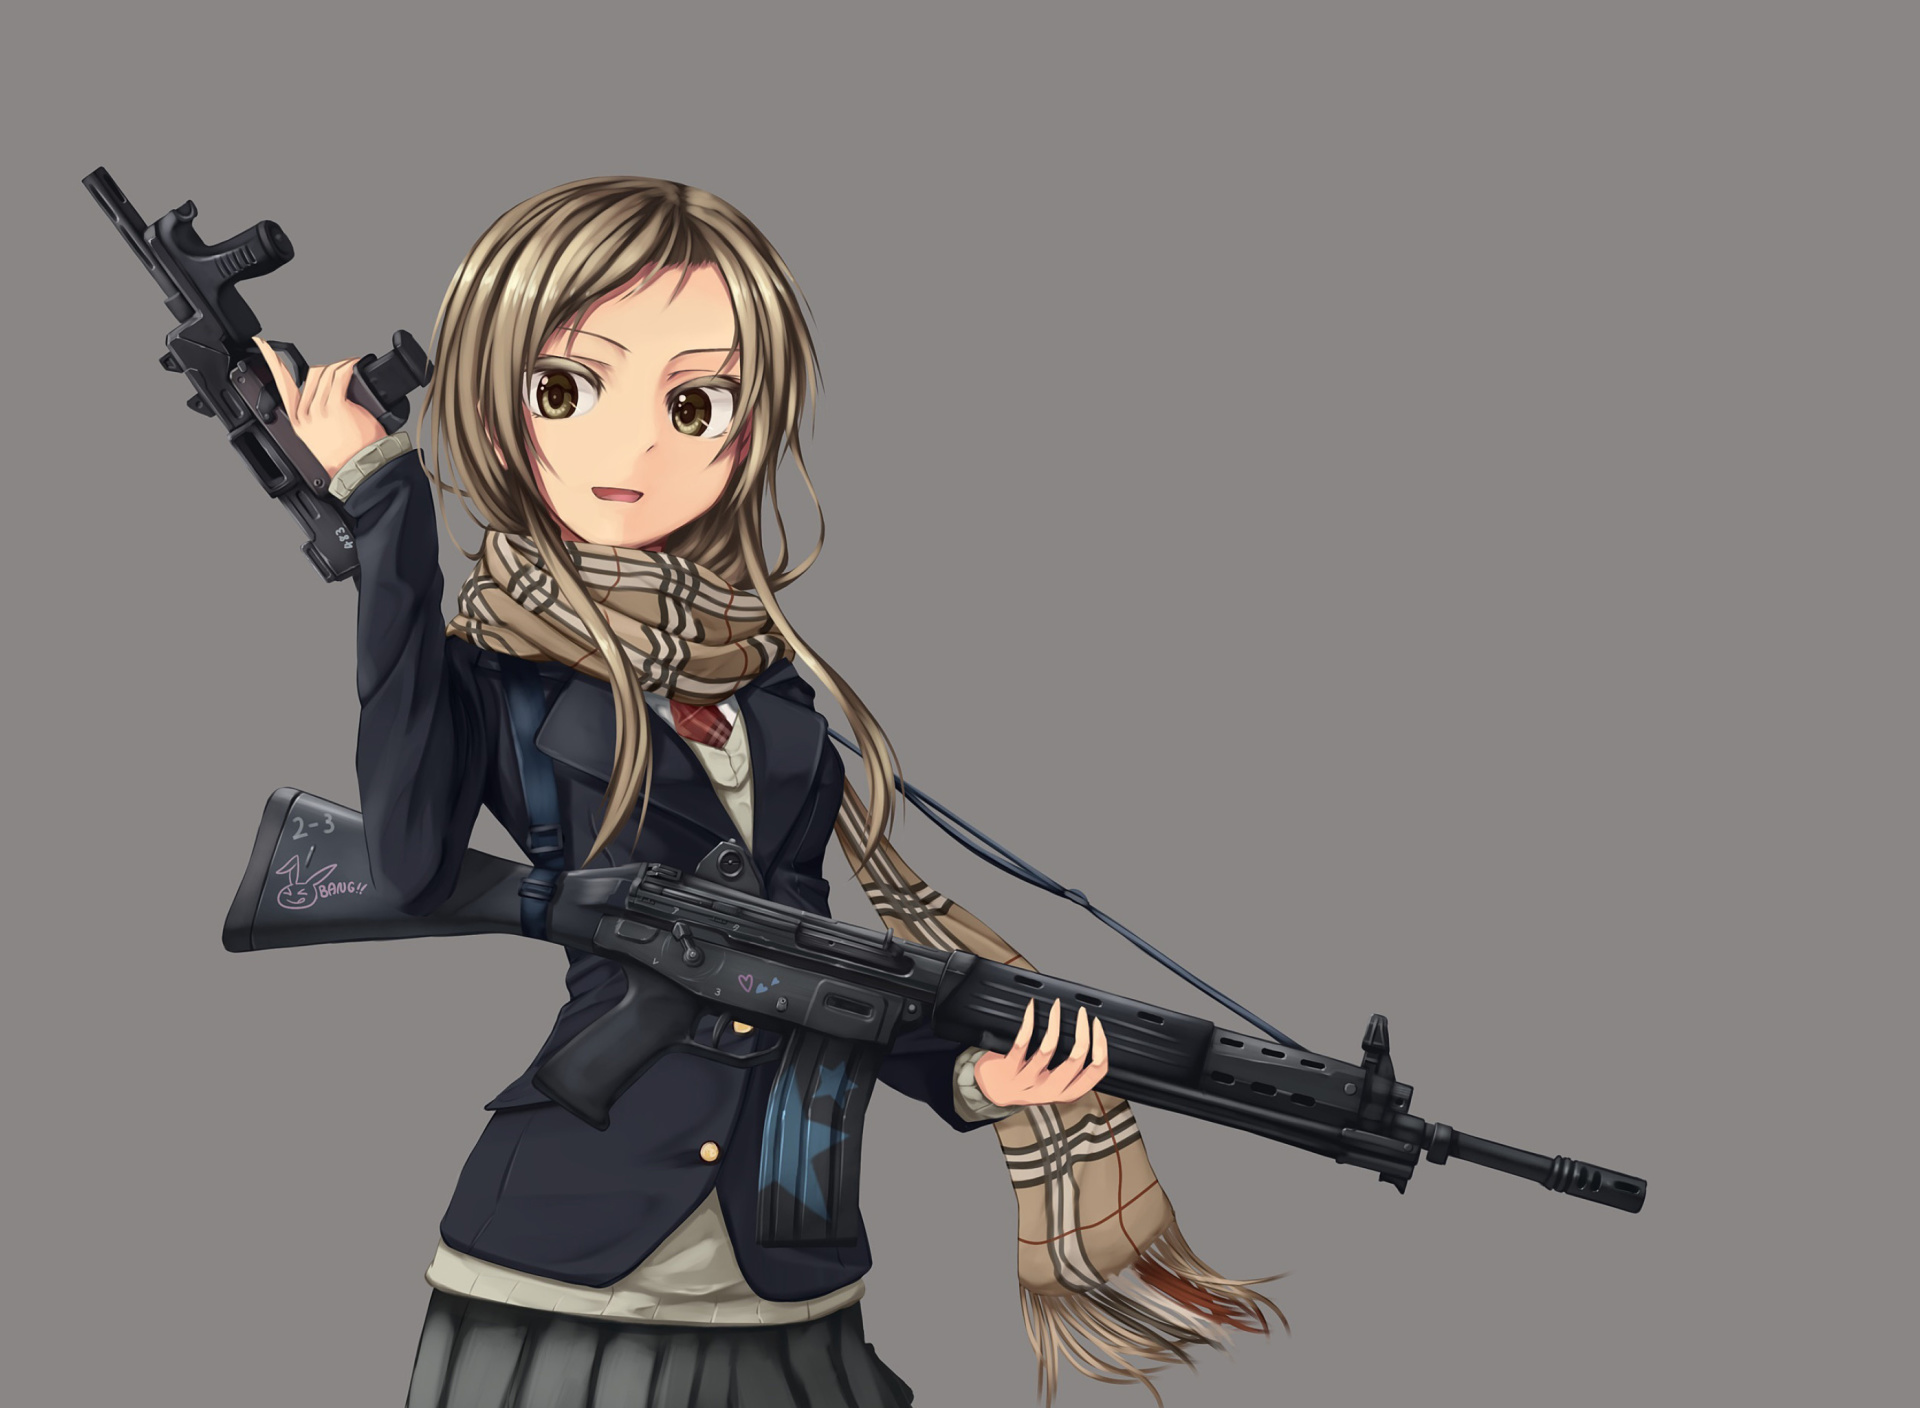 Sfondi Anime girl with gun 1920x1408